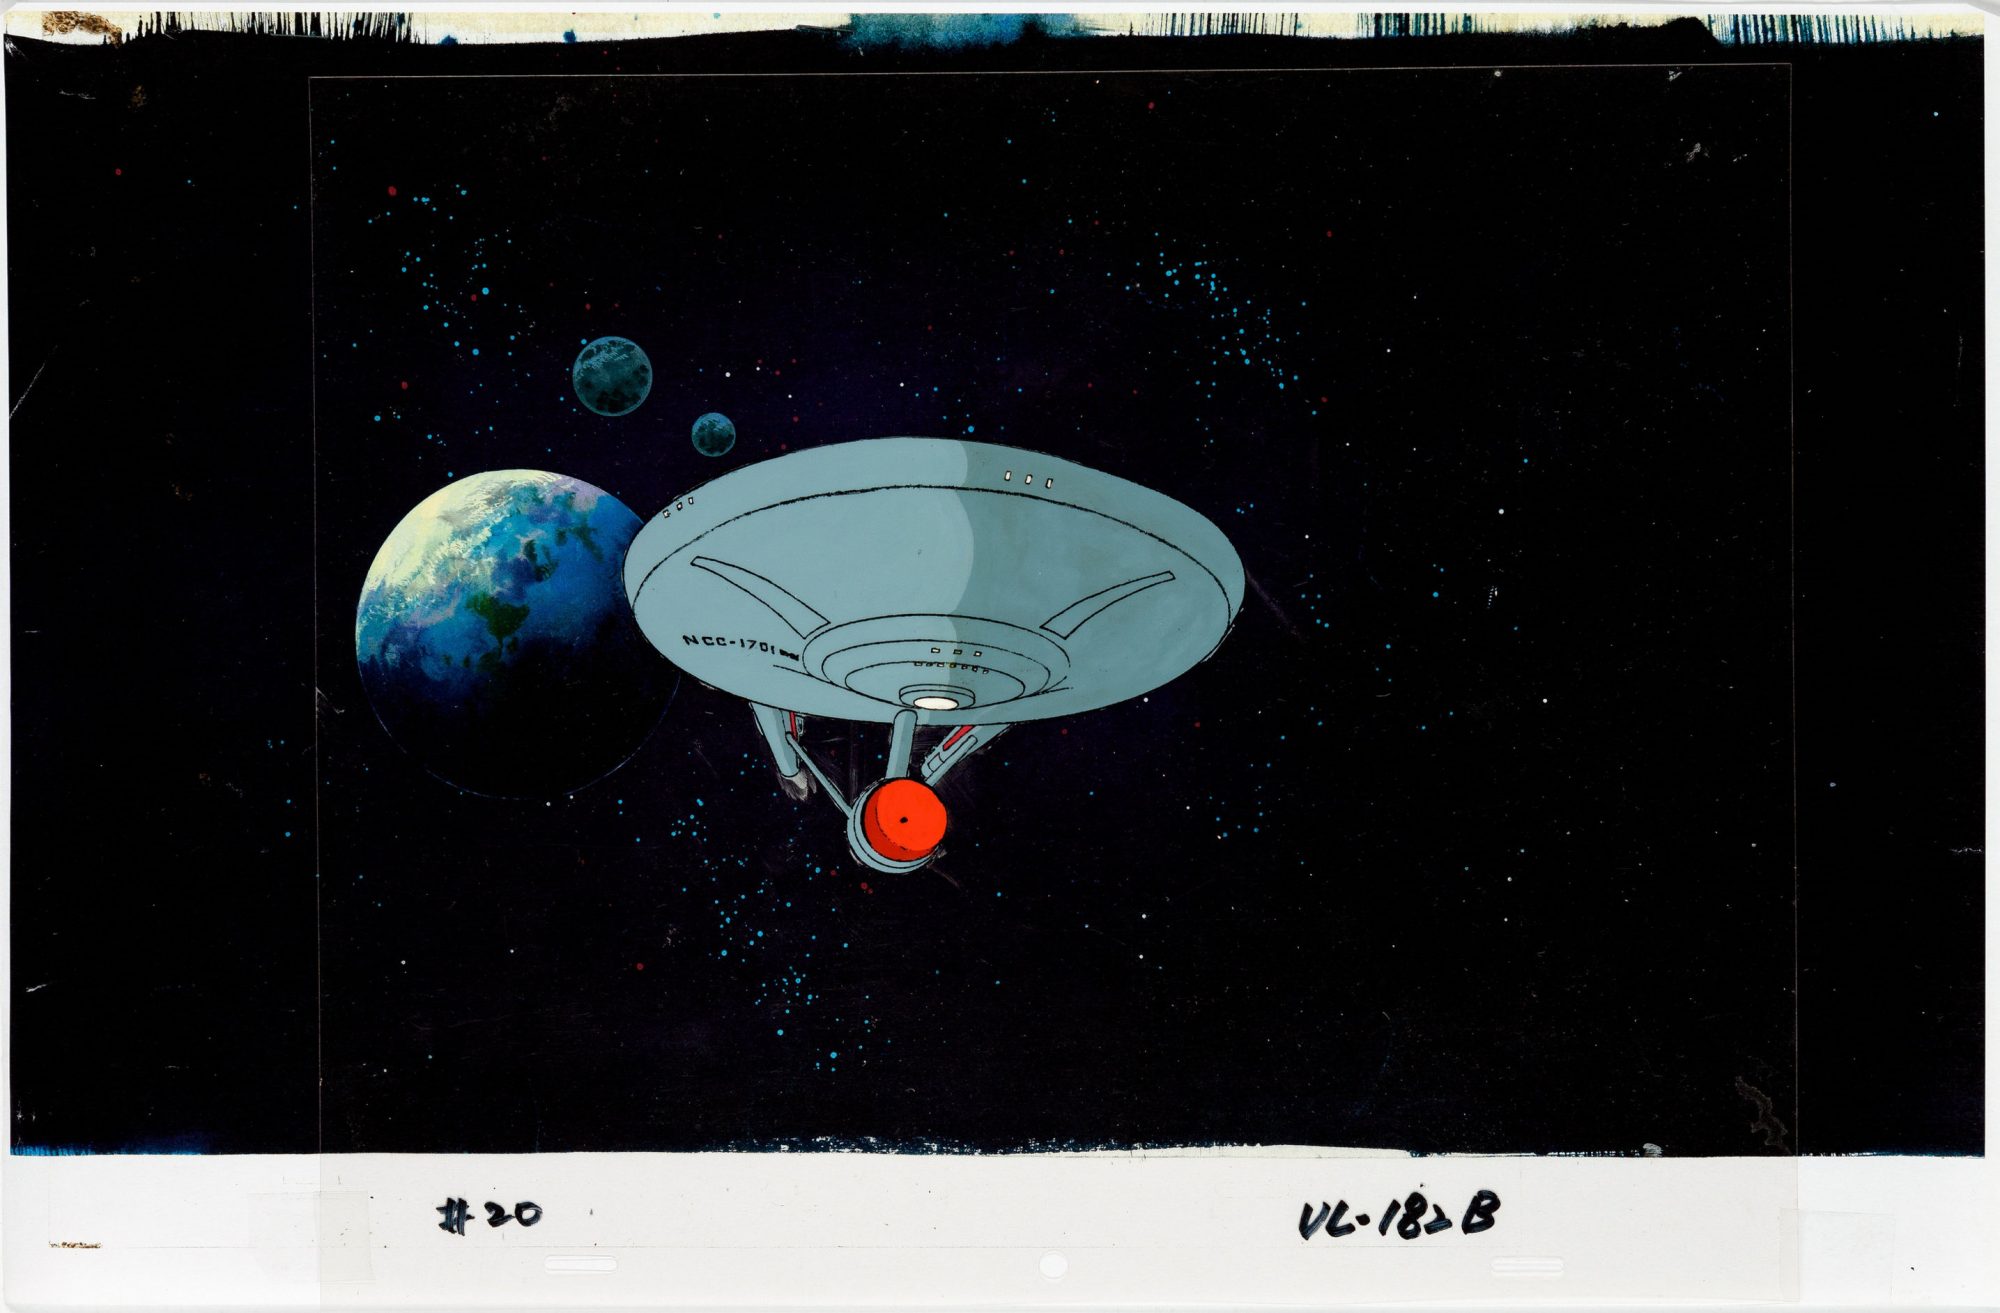 Star Trek: The Animated Series (1973) USS Enterprise cell